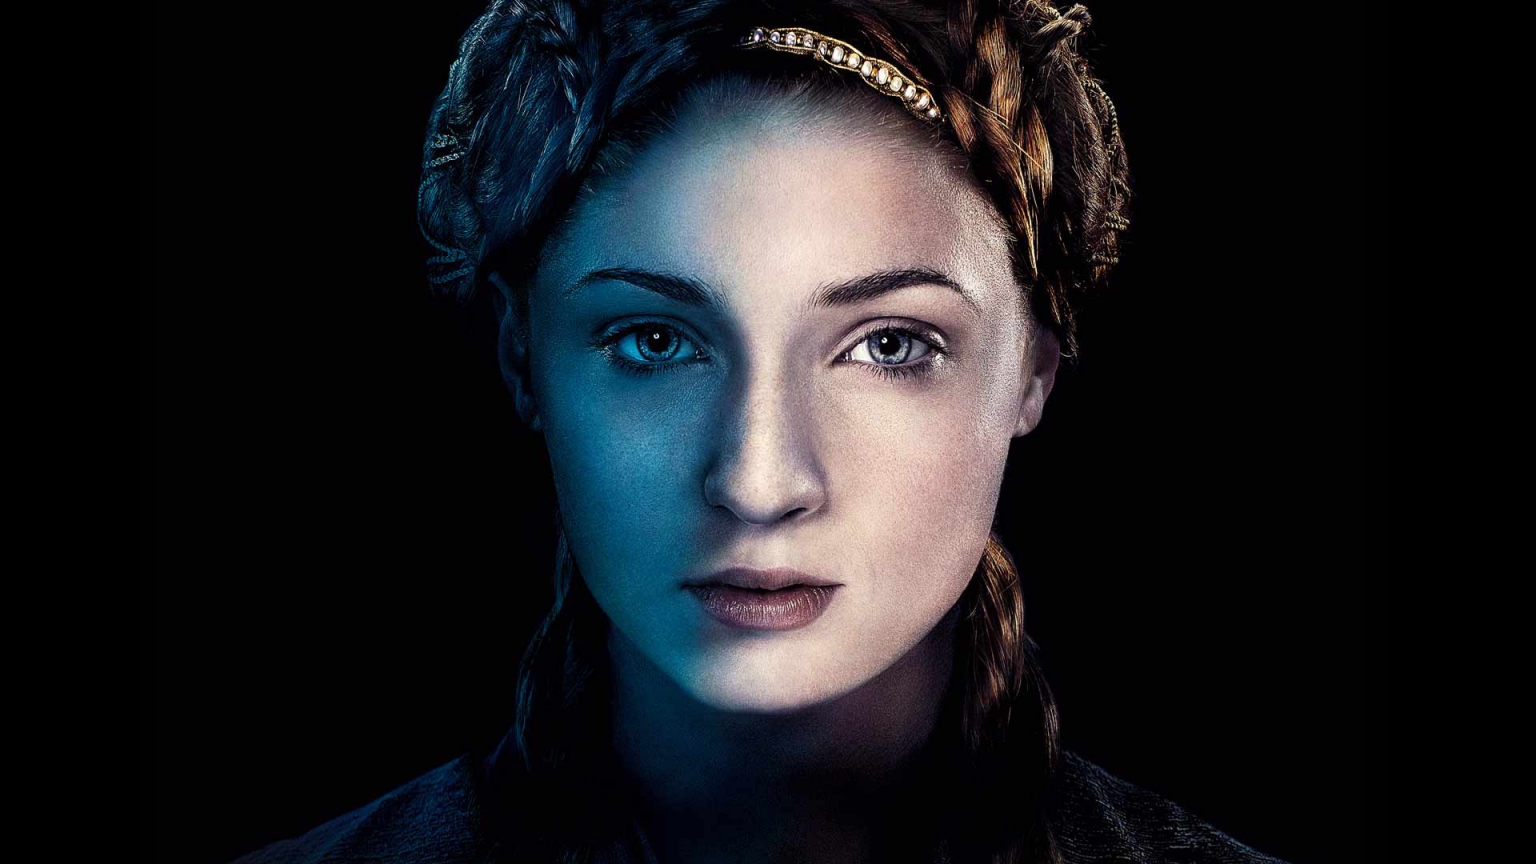 Sansa Stark Game of Thrones for 1536 x 864 HDTV resolution